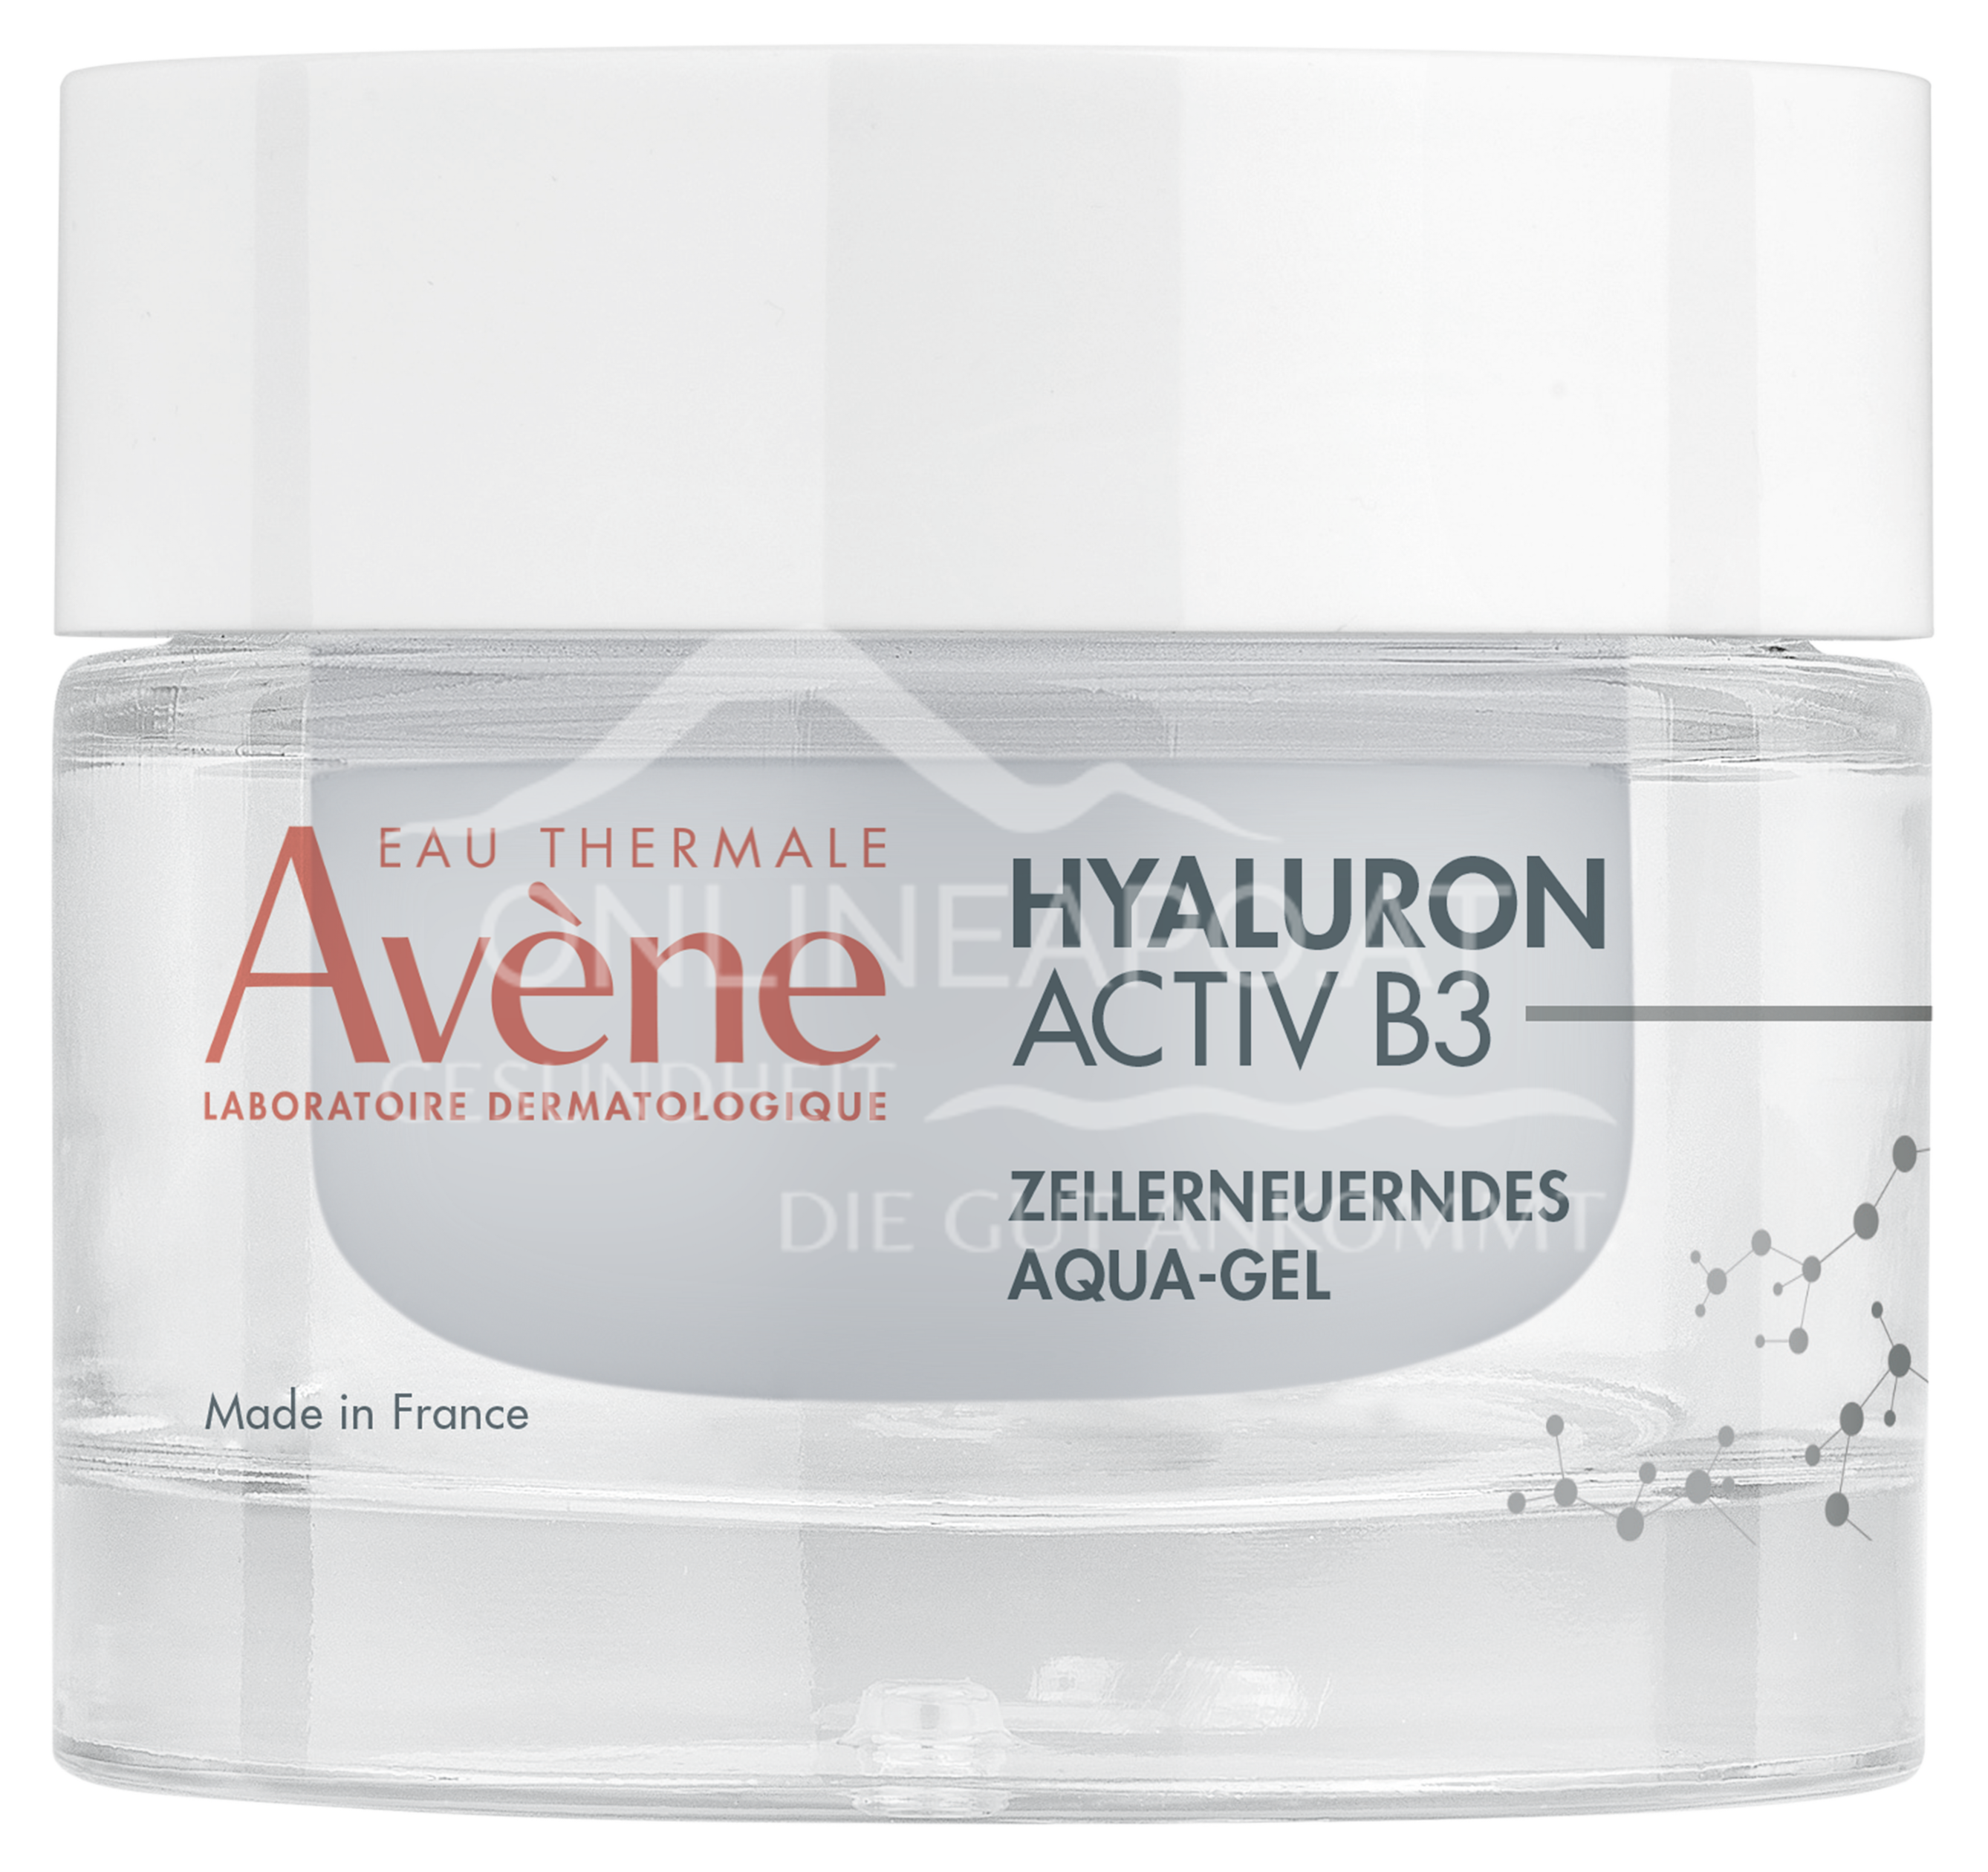 Avene Hyaluron Activ B3 Zellerneuerndes Aqua-Gel